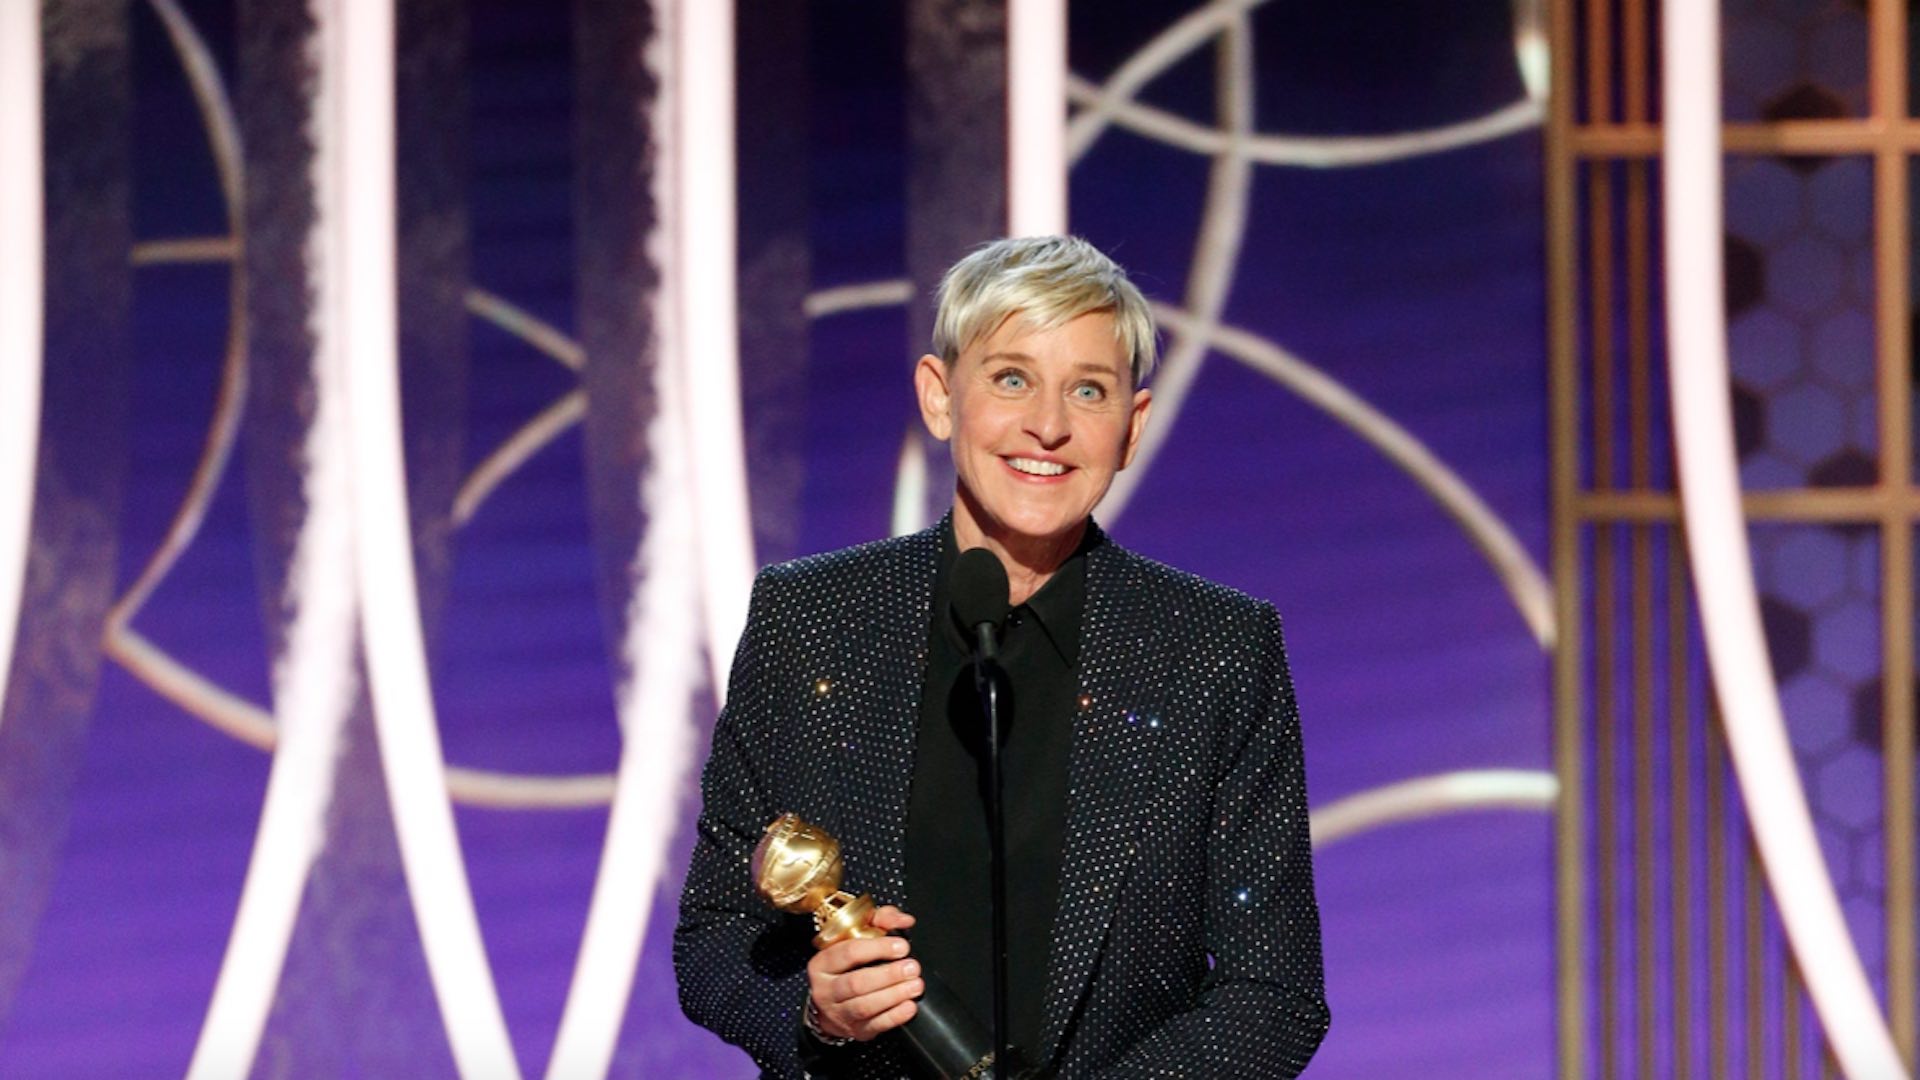 El show de Ellen DeGeneres no va más